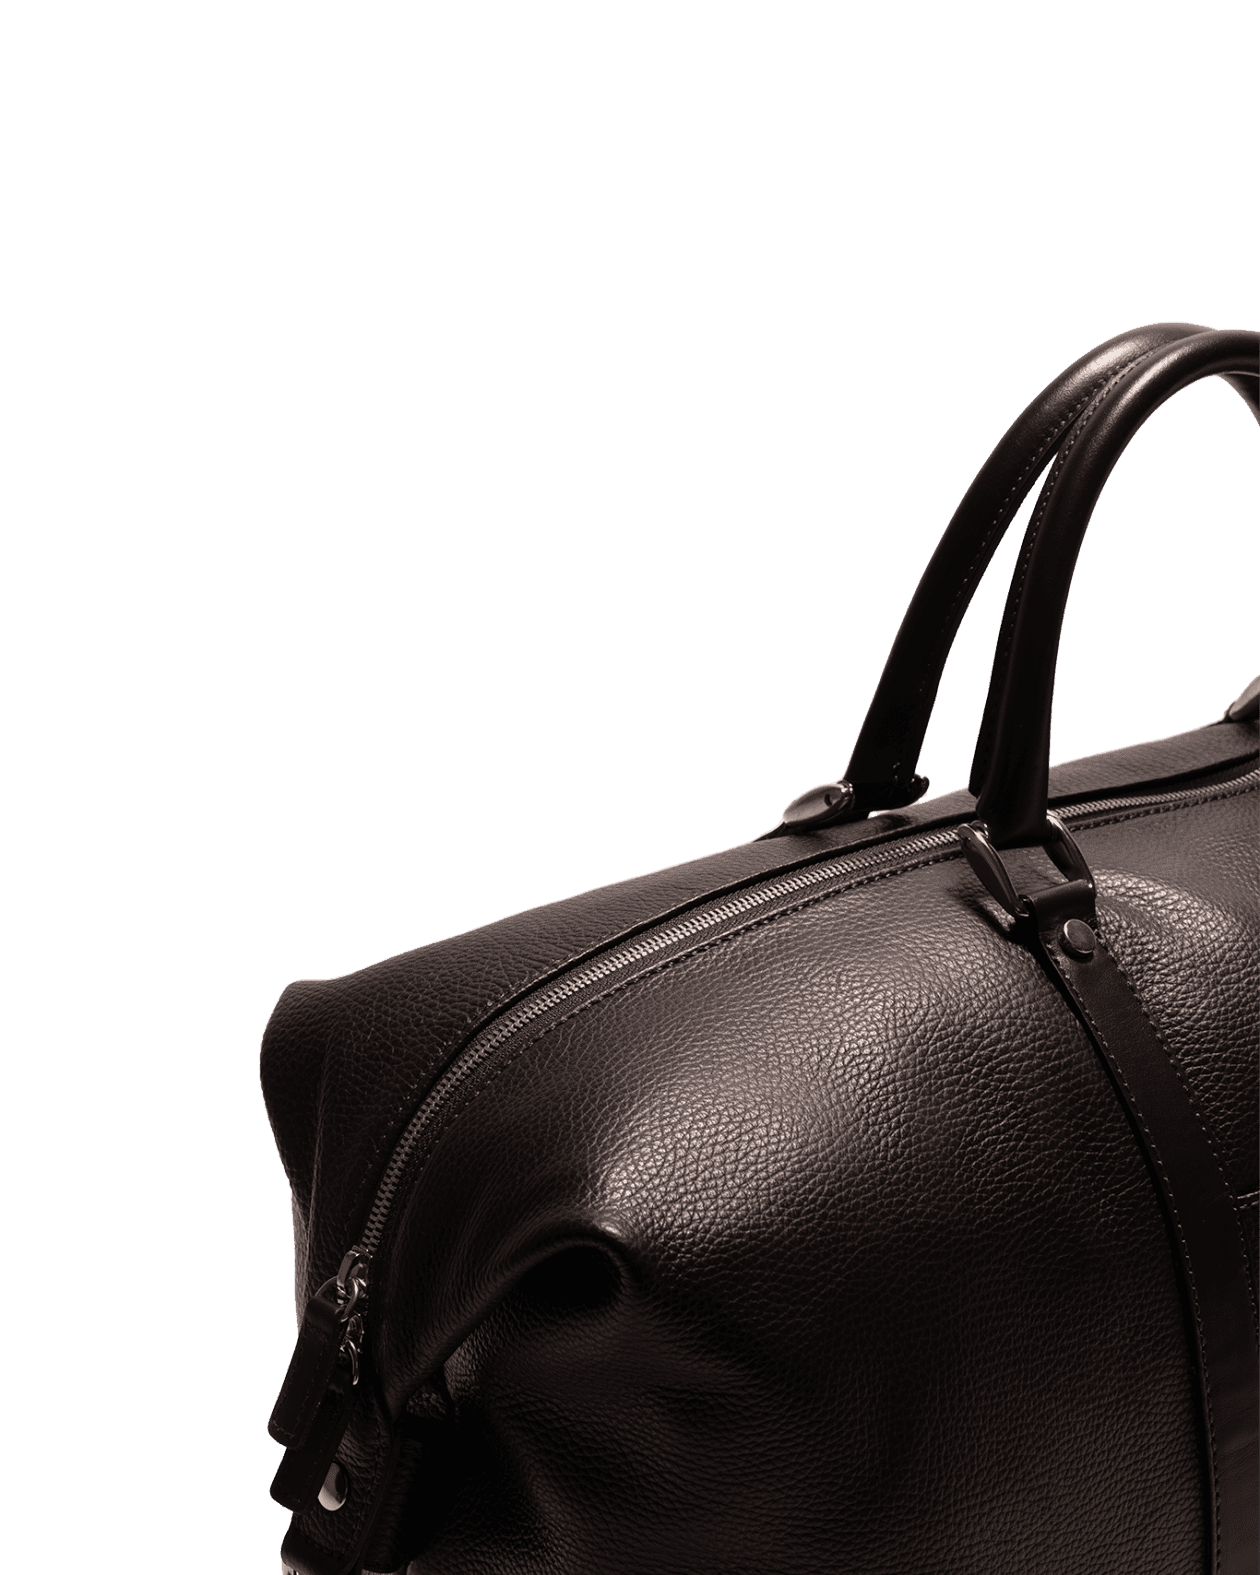 Weekend Bag Calf Leather Brown